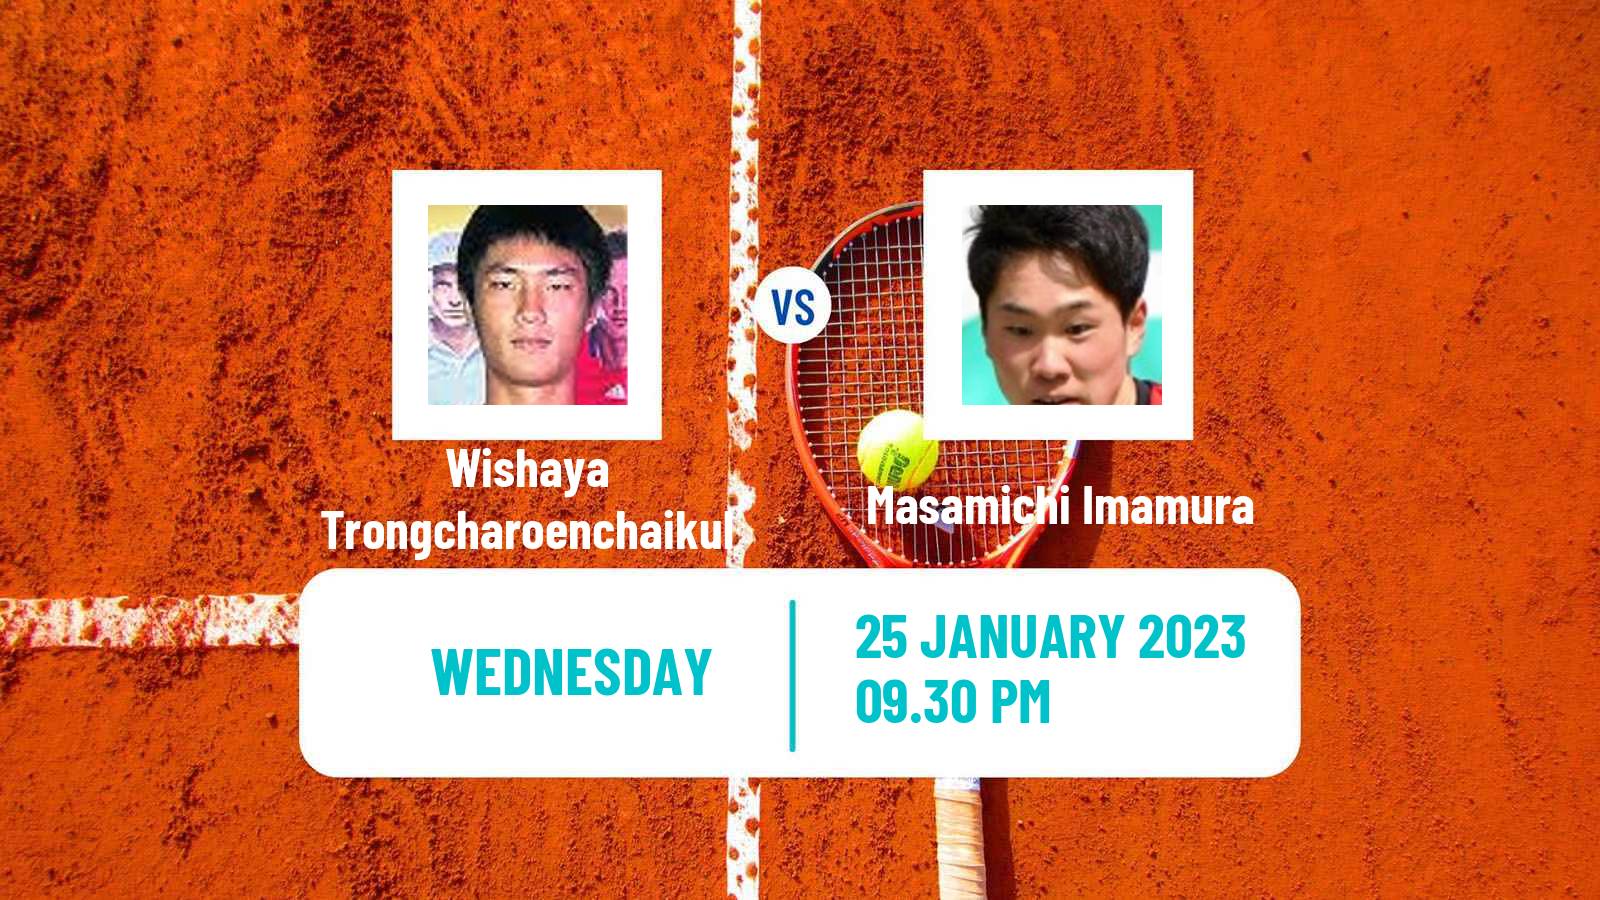 Tennis ITF Tournaments Wishaya Trongcharoenchaikul - Masamichi Imamura